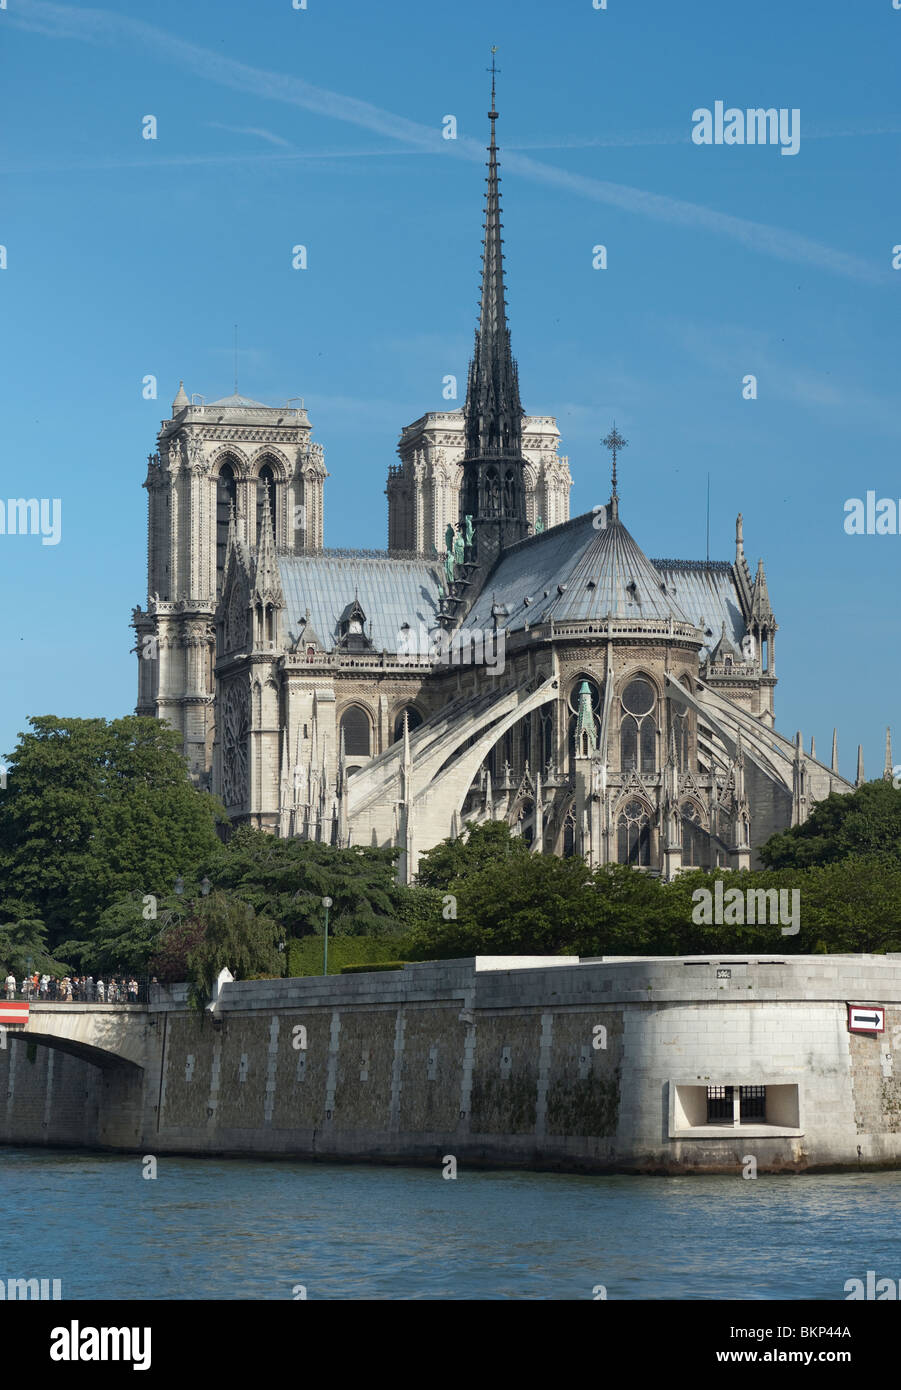 Cathédrale Notre Dame Vue de derrière, Paris, France Banque D'Images